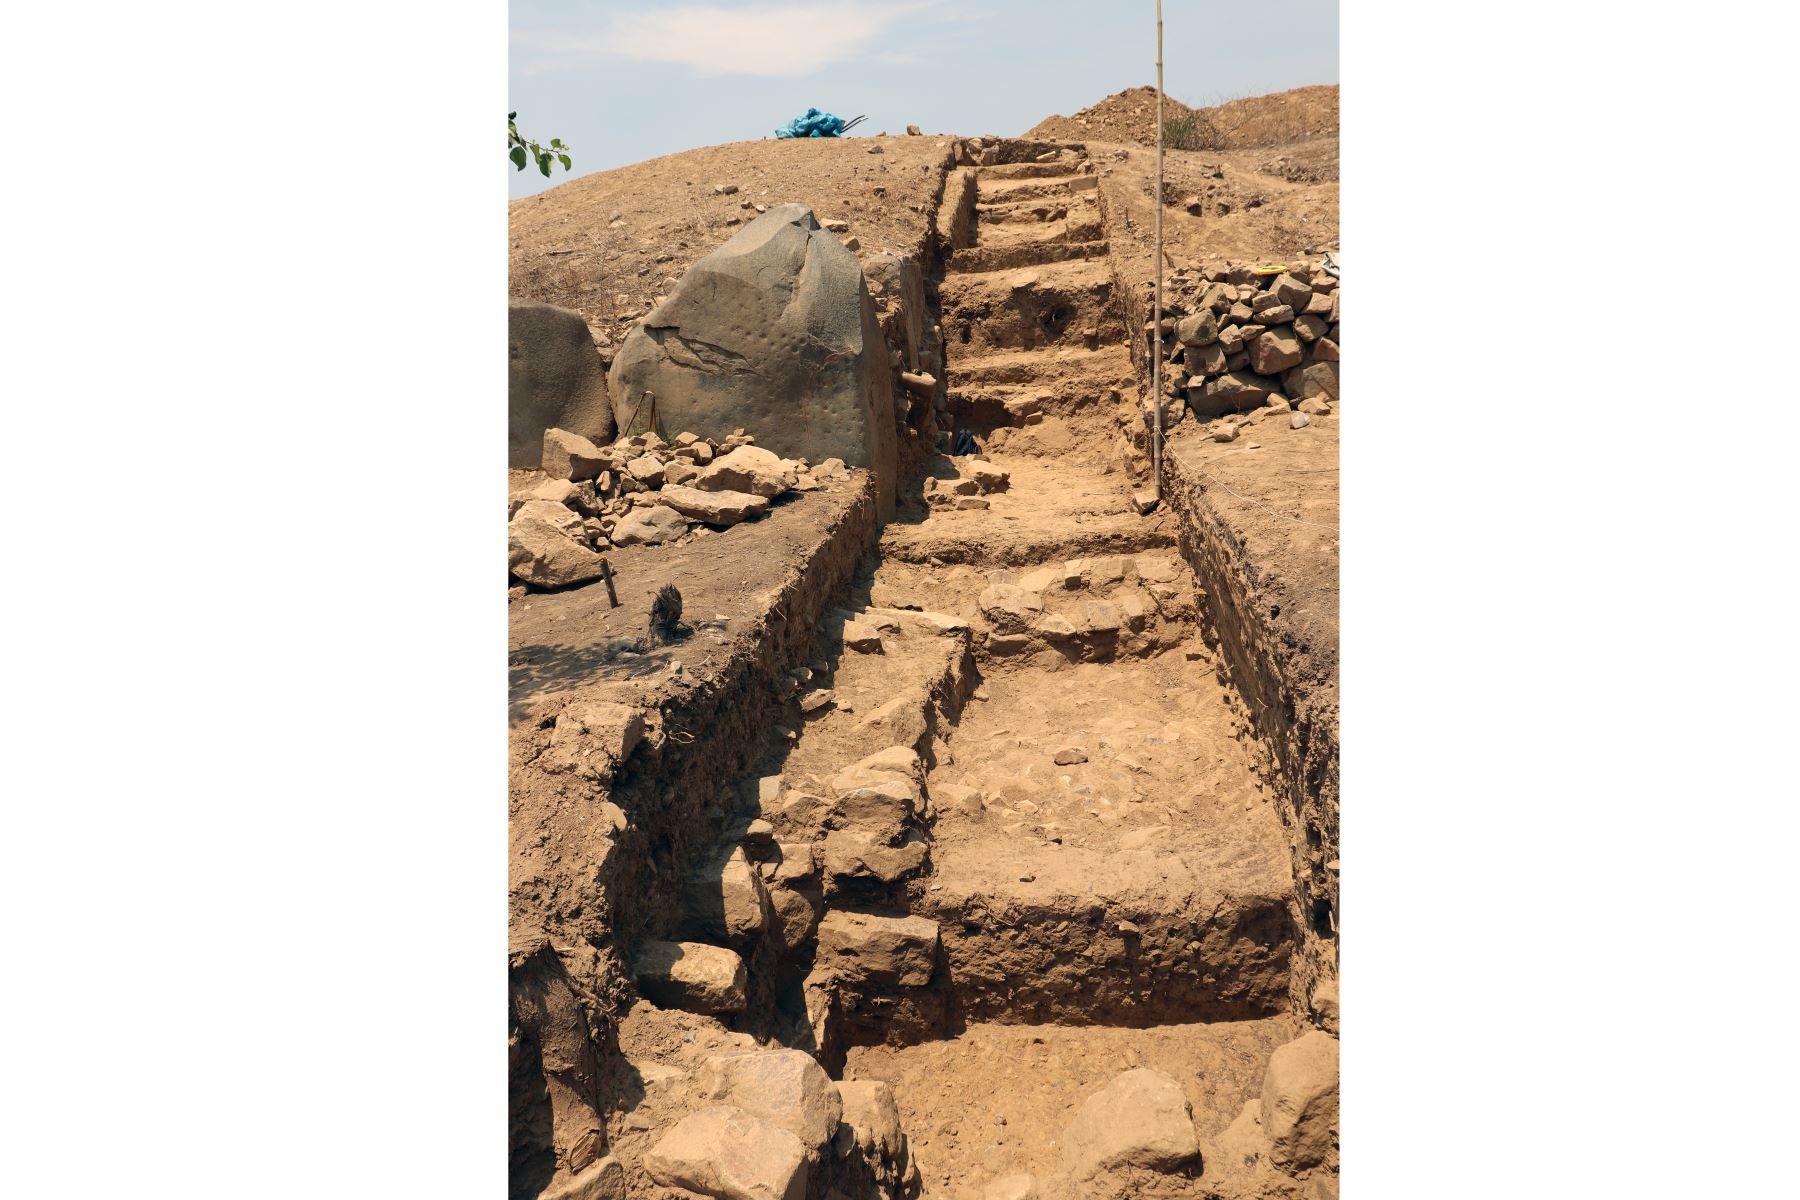 Una escalera en el sitio de excavación de El Toro, donde se desenterraron restos de un templo megalítico de 3.000 años de antigüedad, en Oyotun, provincia de Chiclayo, departamento de Labayeque, Perú.
El templo supuestamente se utilizó para organizar rituales paganos de culto al agua en el antiguo Perú.
Foto: AFP